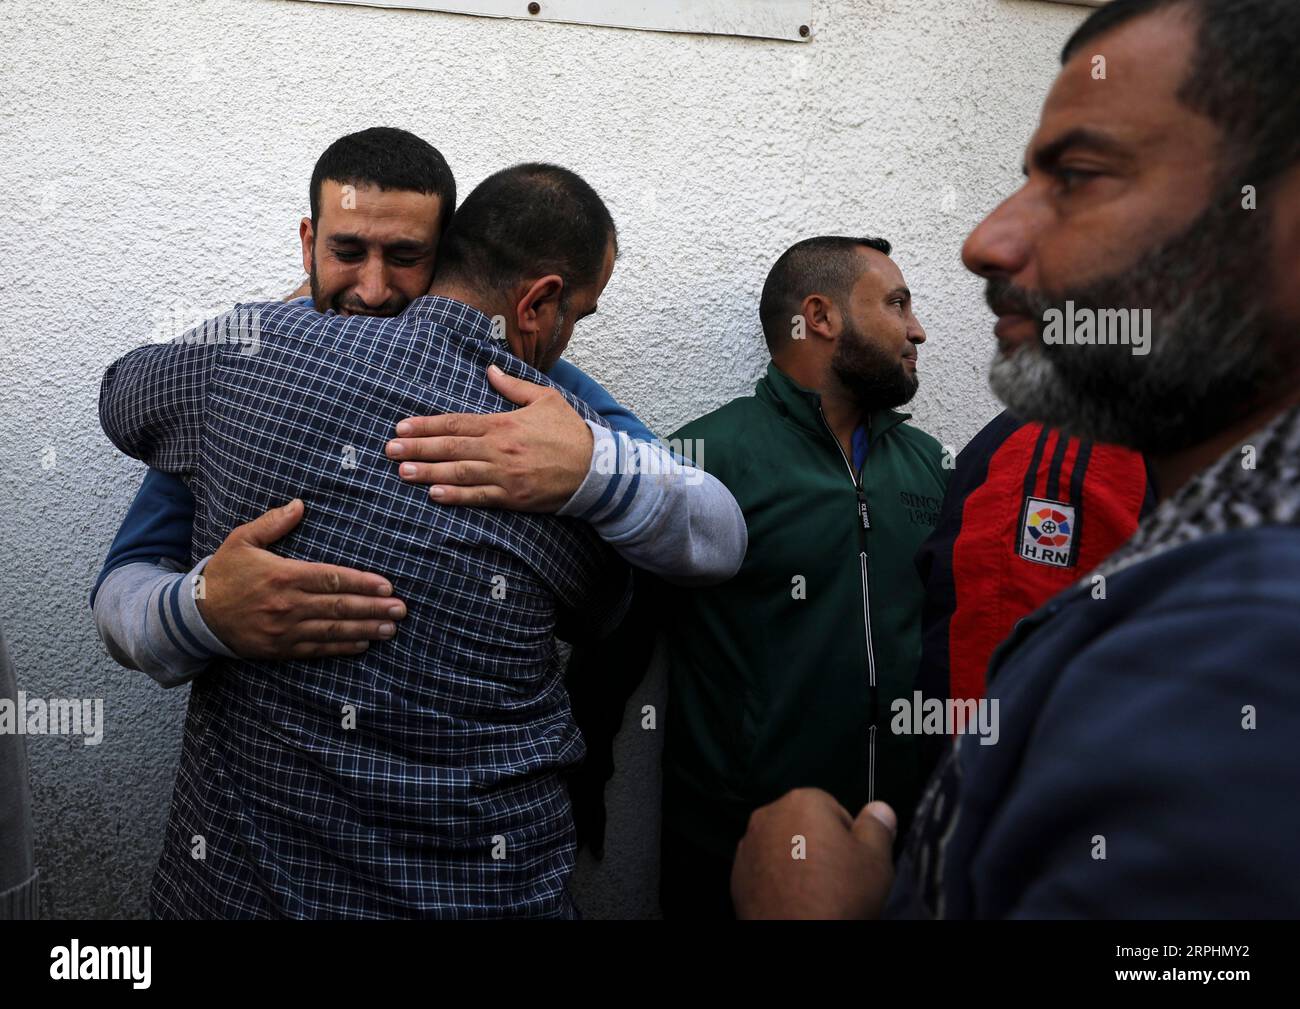 191113 -- GAZA, 13 de noviembre de 2019 Xinhua -- Los palestinos lloran a sus familiares que murieron en ataques aéreos israelíes en una morgue de un hospital en la ciudad de Gaza, 13 de noviembre de 2019. Al menos 16 palestinos han muerto y otros 50 resultaron heridos en Gaza desde el martes, según cifras del Ministerio de Salud de Gaza. Yasser Qudih/Xinhua Gaza *** 191113 GAZA, nov. 2019 Los palestinos Xinhua lloran a sus familiares que murieron en ataques aéreos israelíes en una morgue hospitalaria de la ciudad de Gaza, 13 nov. 2019 Al menos 16 palestinos han muerto y 50 más resultaron heridos en Gaza desde el martes, 21 de noviembre de 13 según la salud de Gaza m Foto de stock